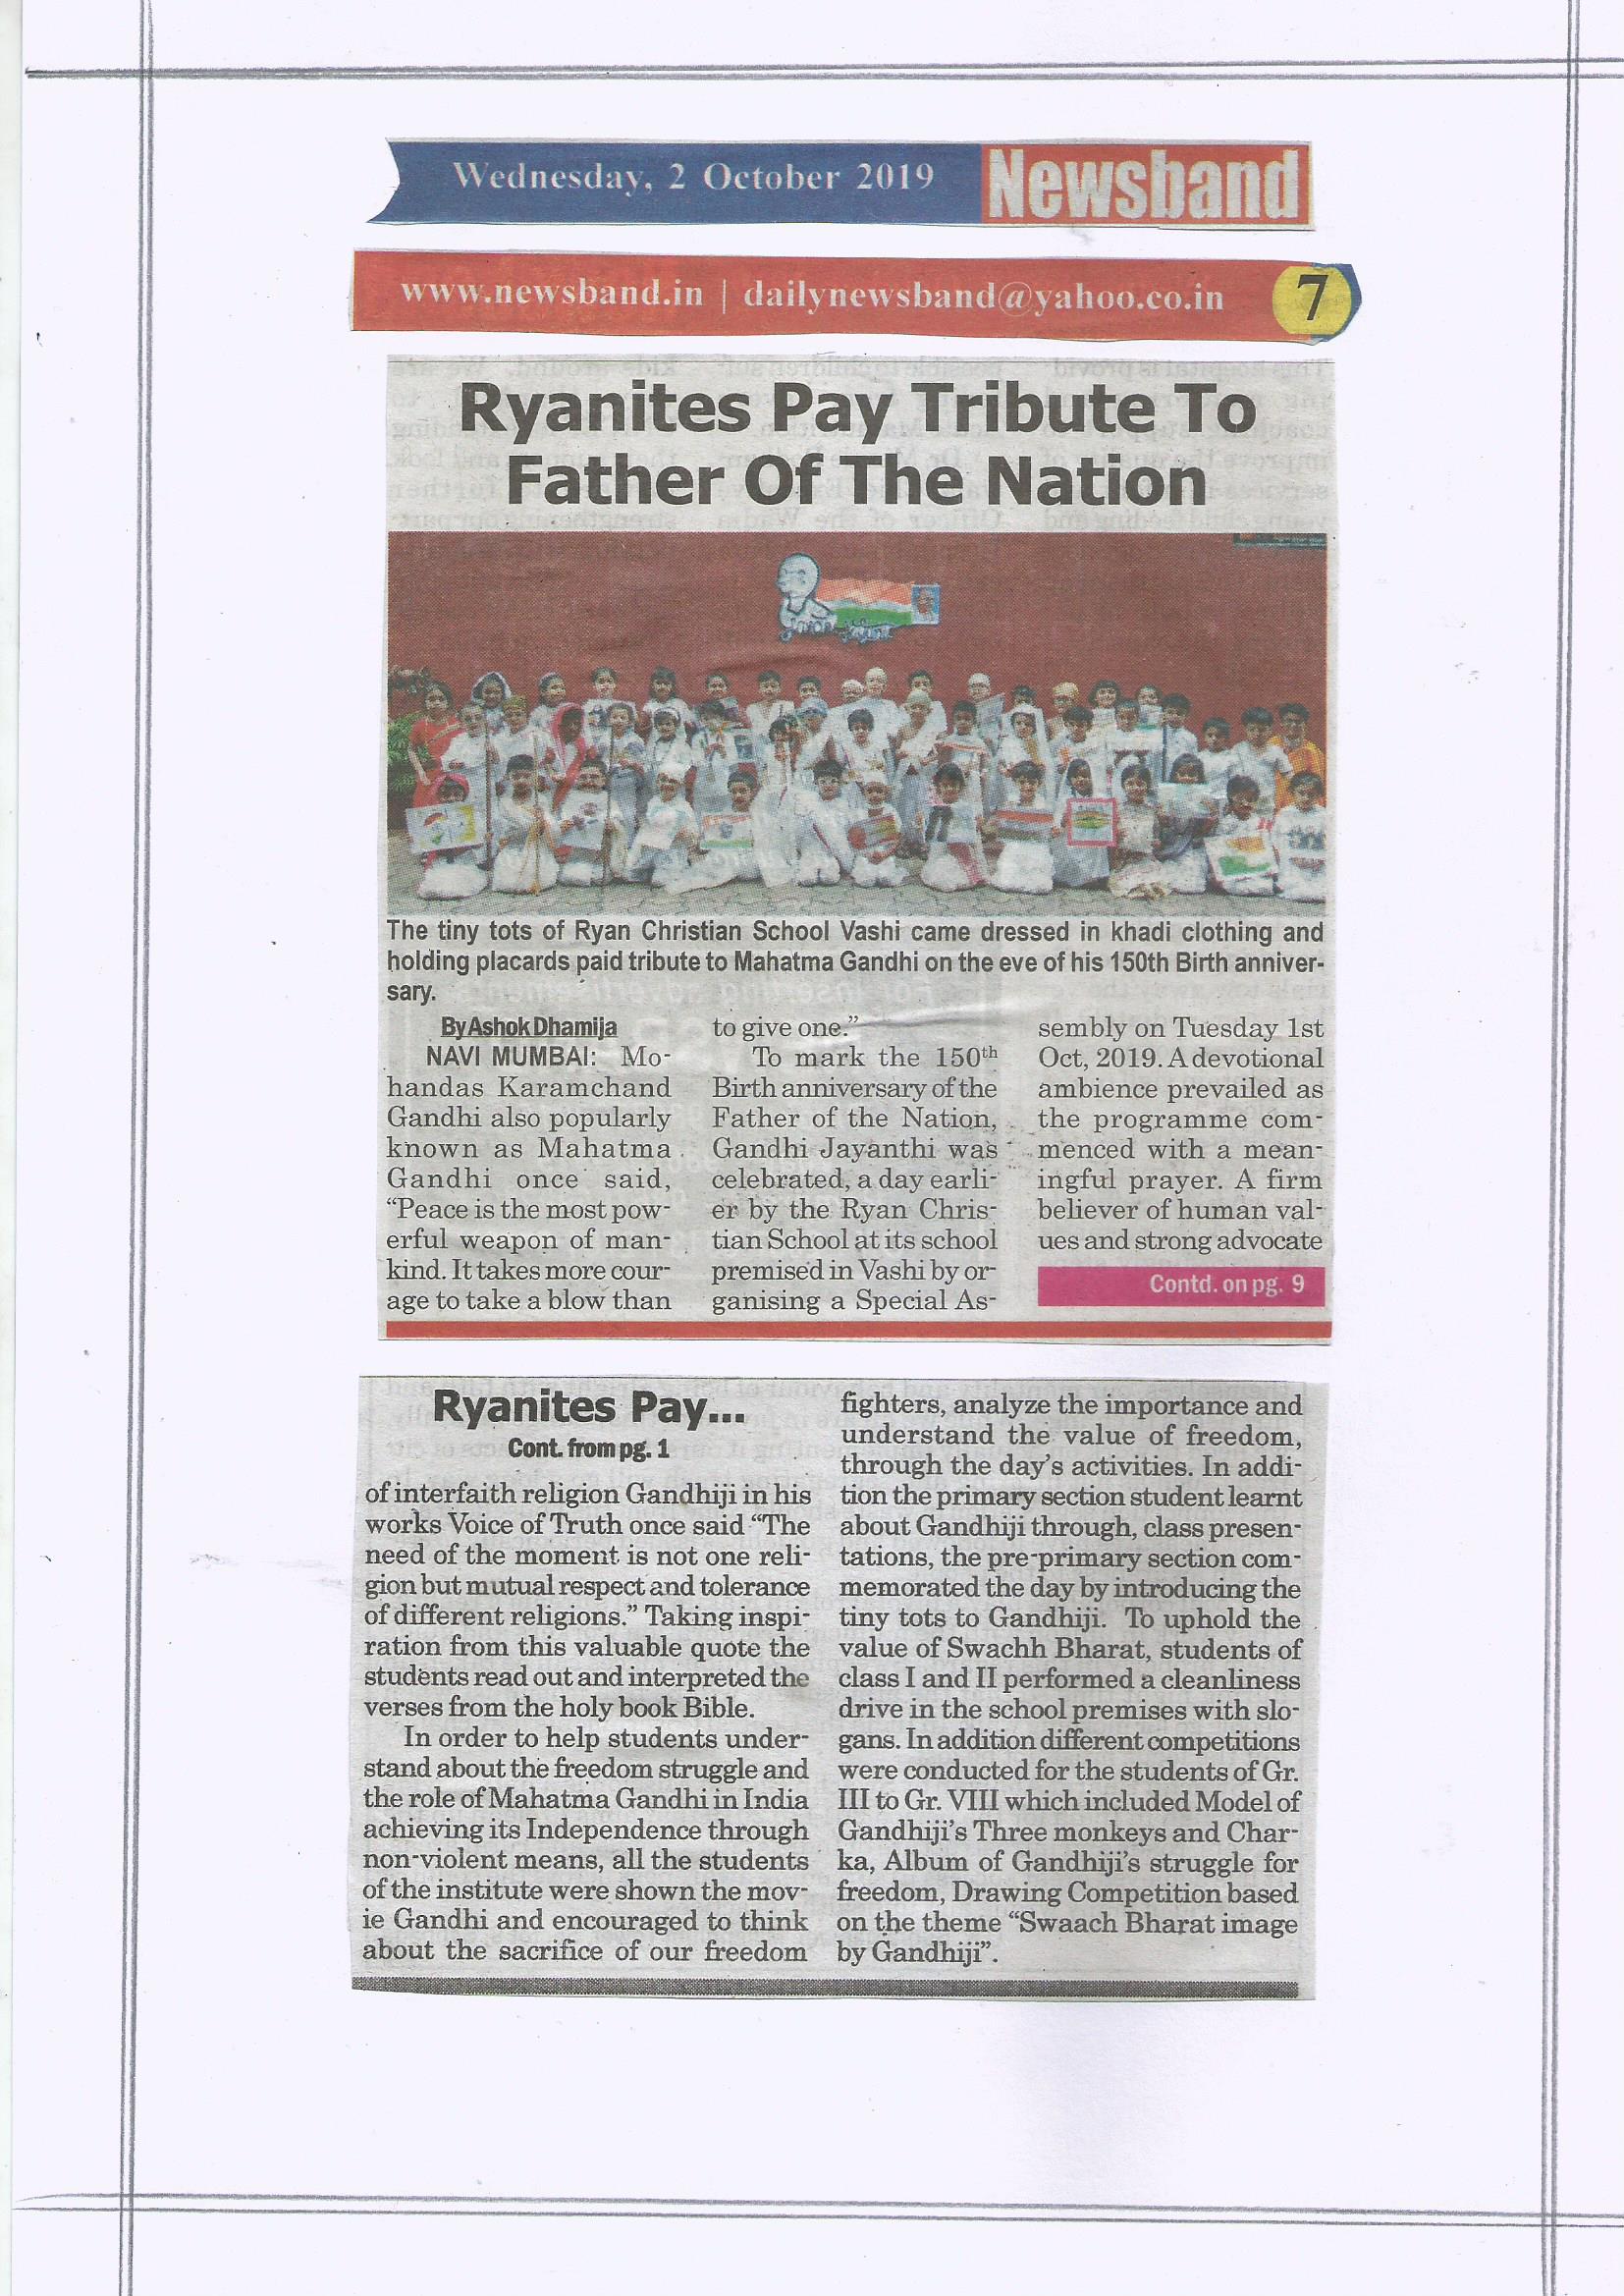 Gandhi Jayanti was featured in Newsband